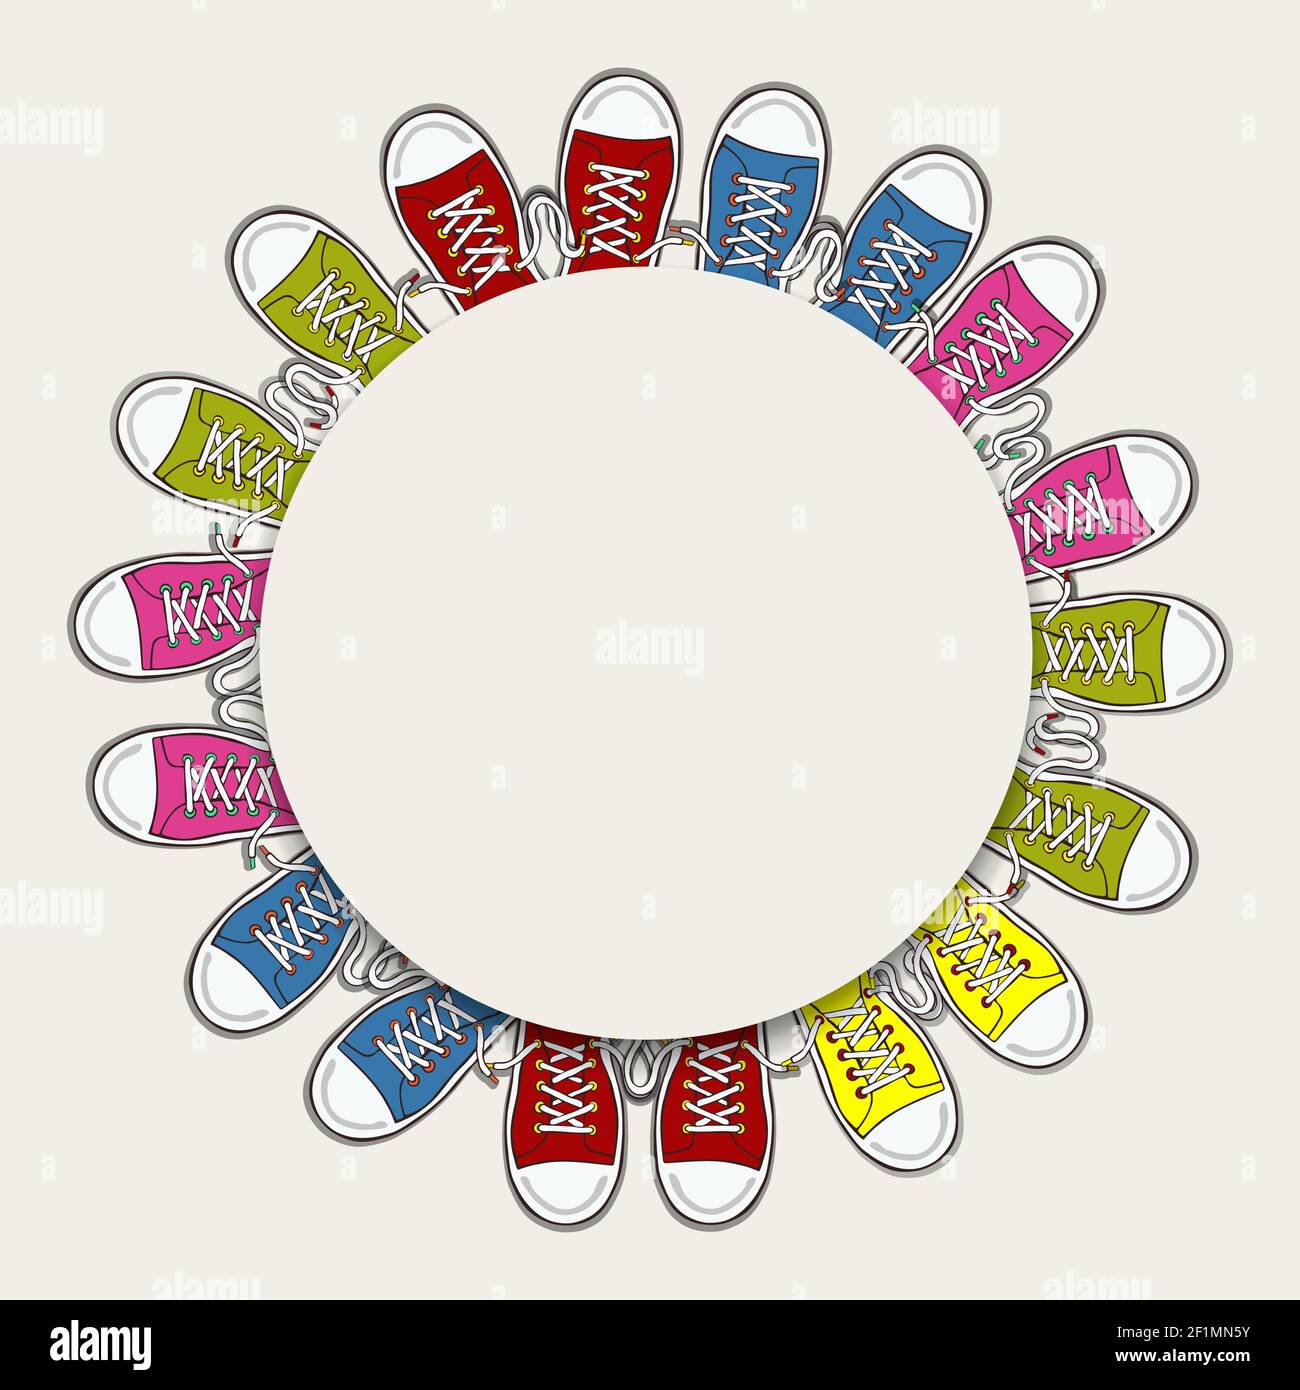 Cornice circolare bianca vuota con scarpe da ginnastica colorate per il concetto di moda teen o per il design di calzature per bambini su sfondo isolato. Illustrazione Vettoriale